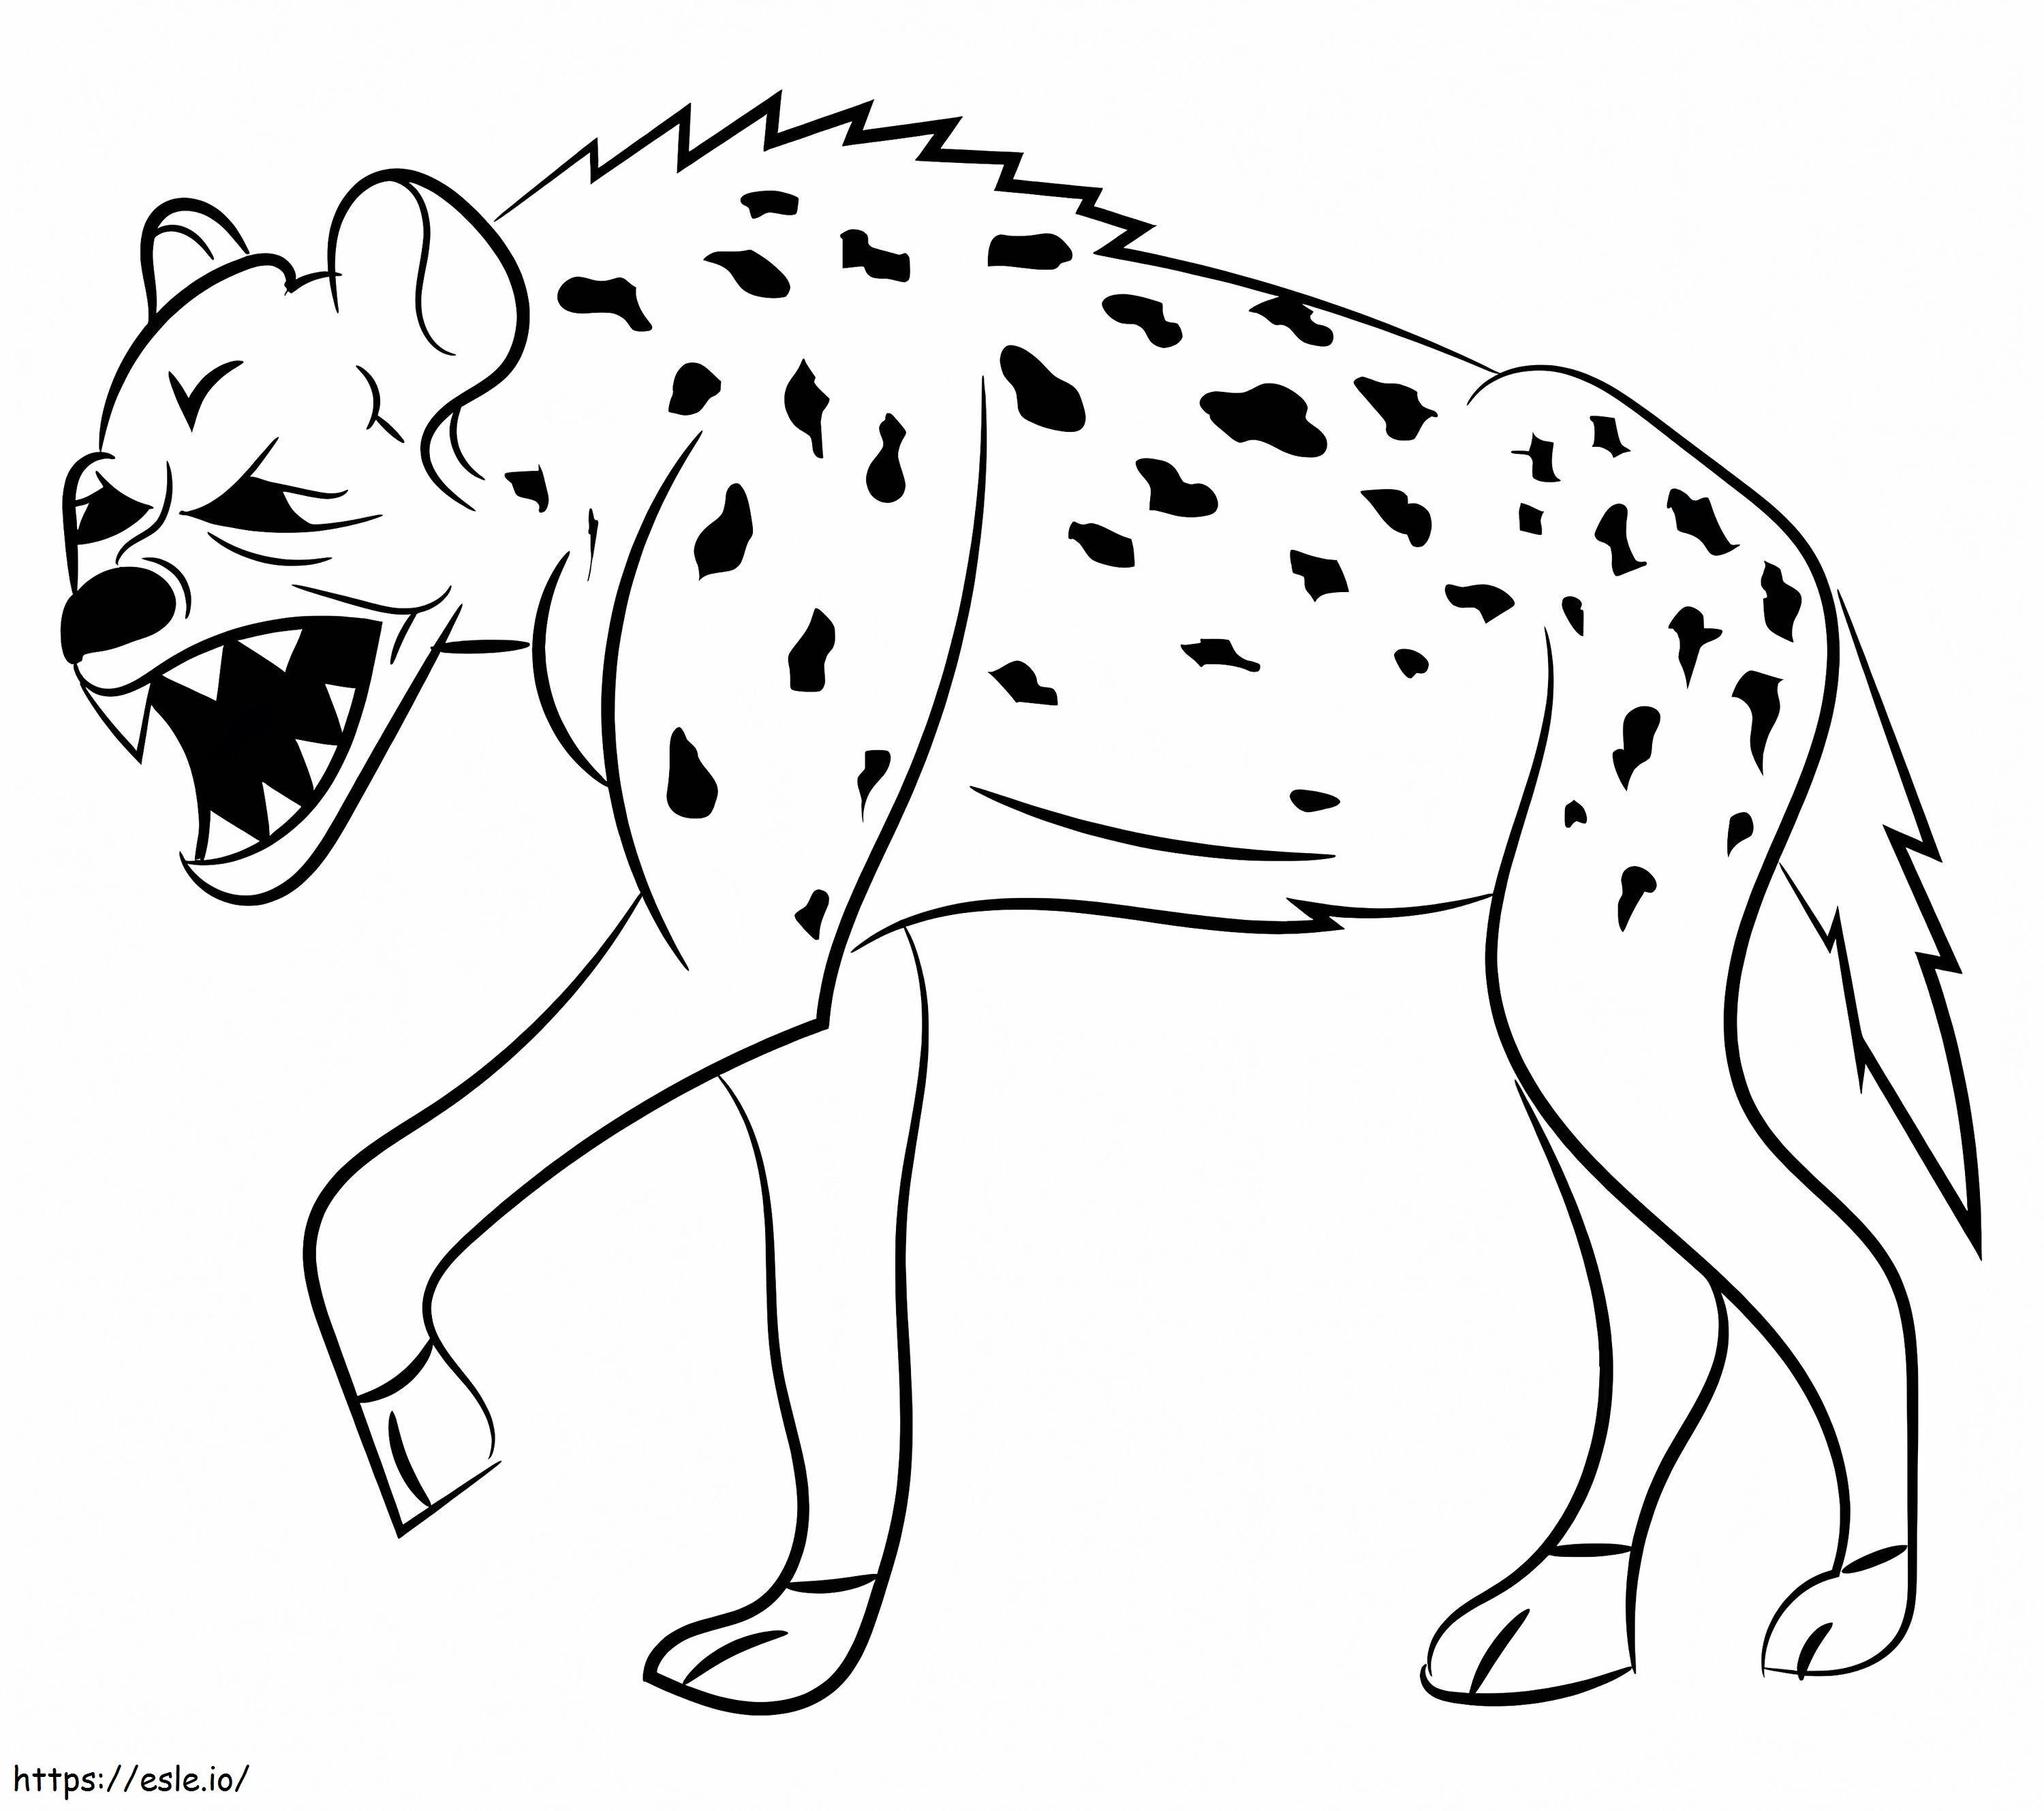 La iena inquietante da colorare